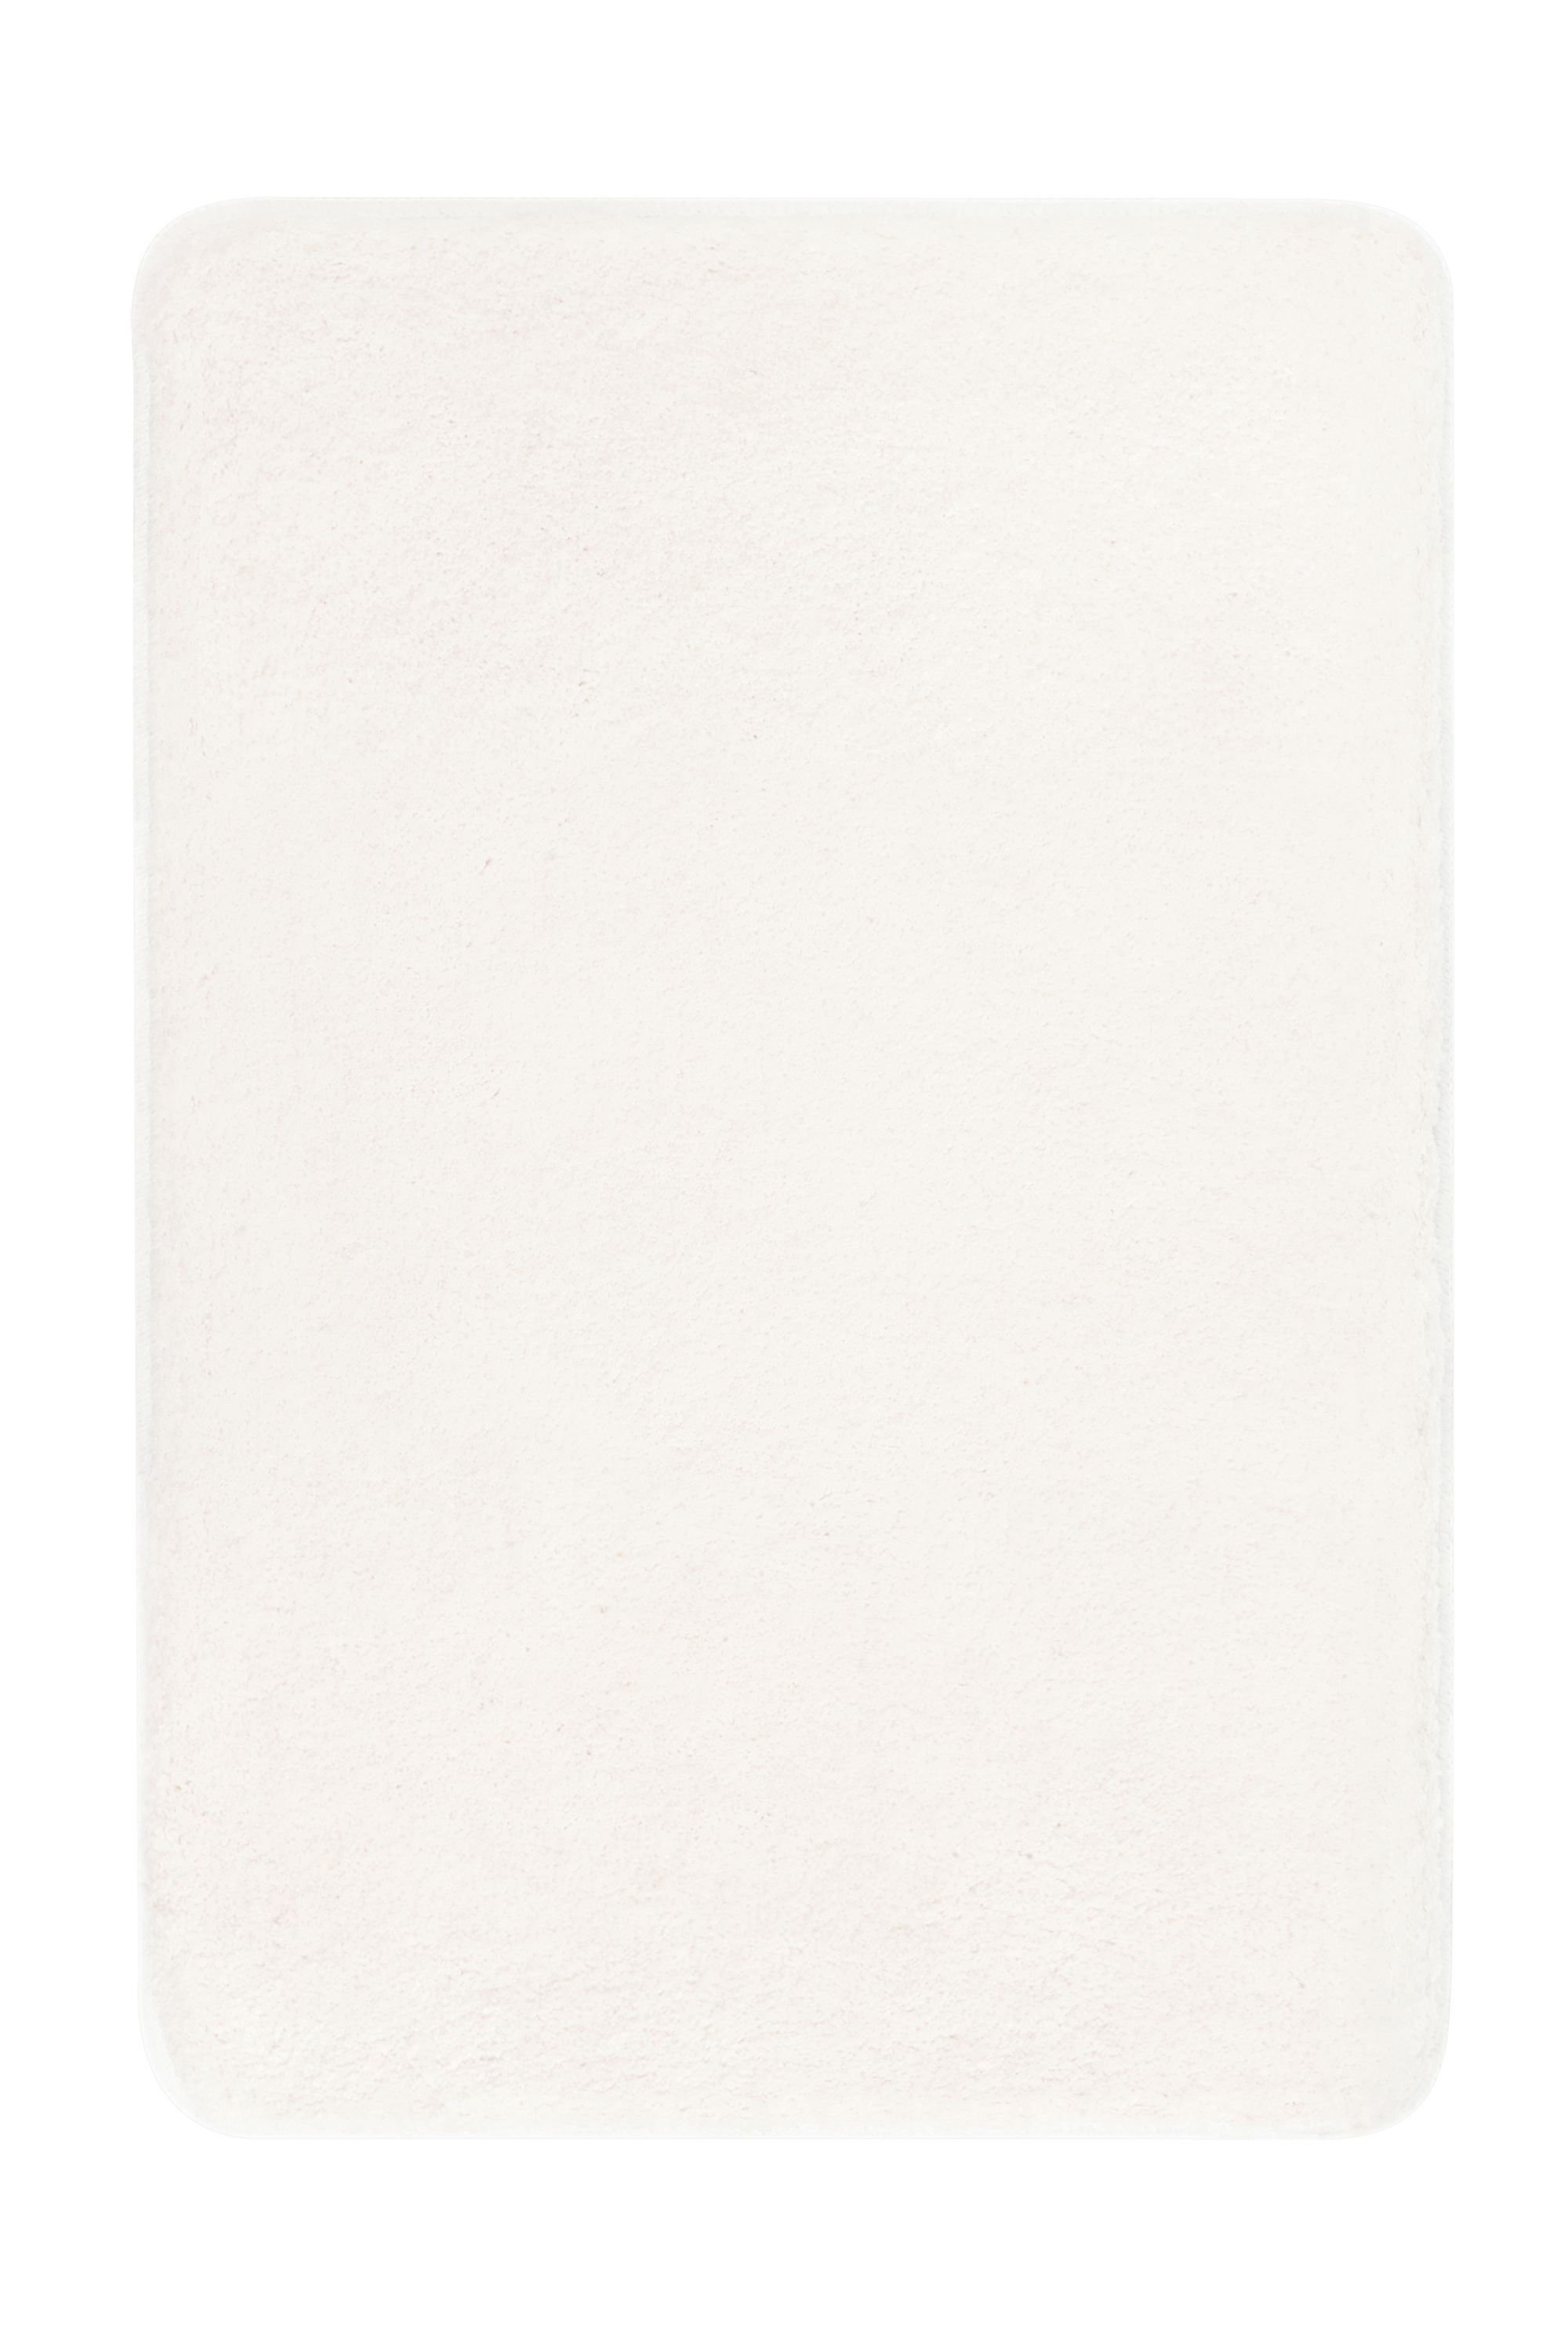 WC-Vorleger, Meadow Weiß, 50x 50 cm